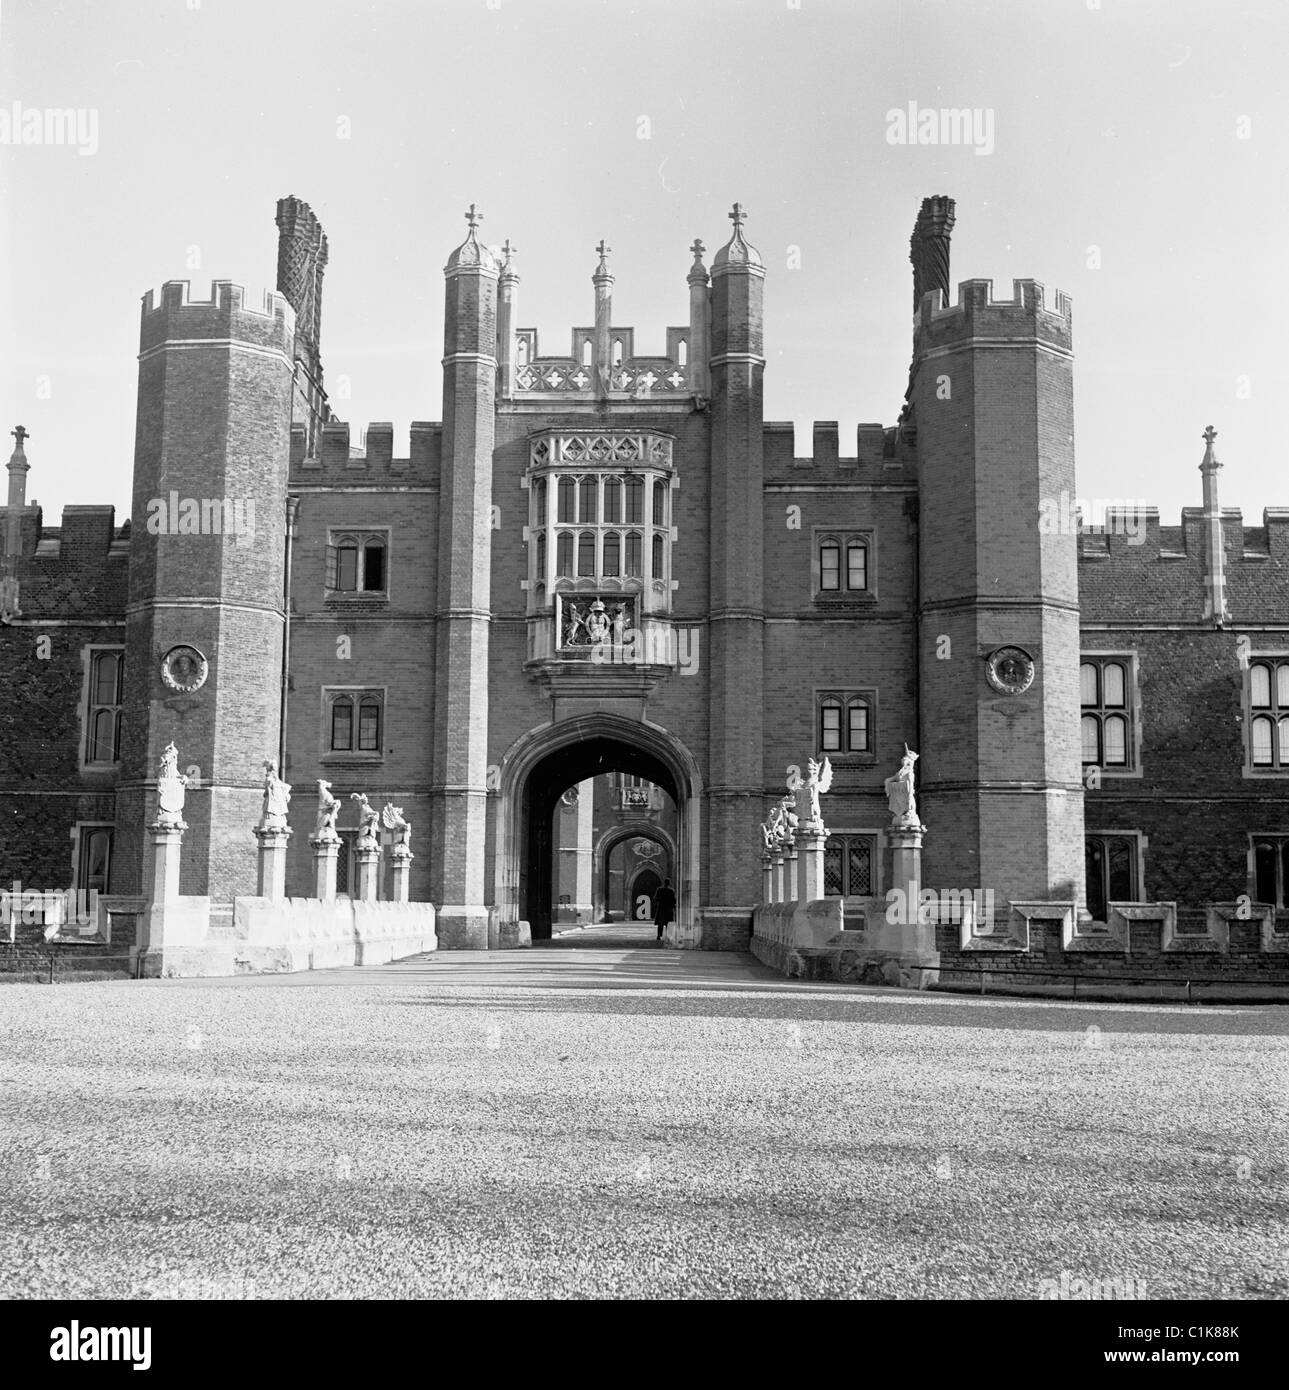 Années 1950, la grande maison Tudor de Hampton court, un palais royal, maison du roi Henri VIII et construit à l'origine en 1514 pour le cardinal Thomas Wolsey. Banque D'Images